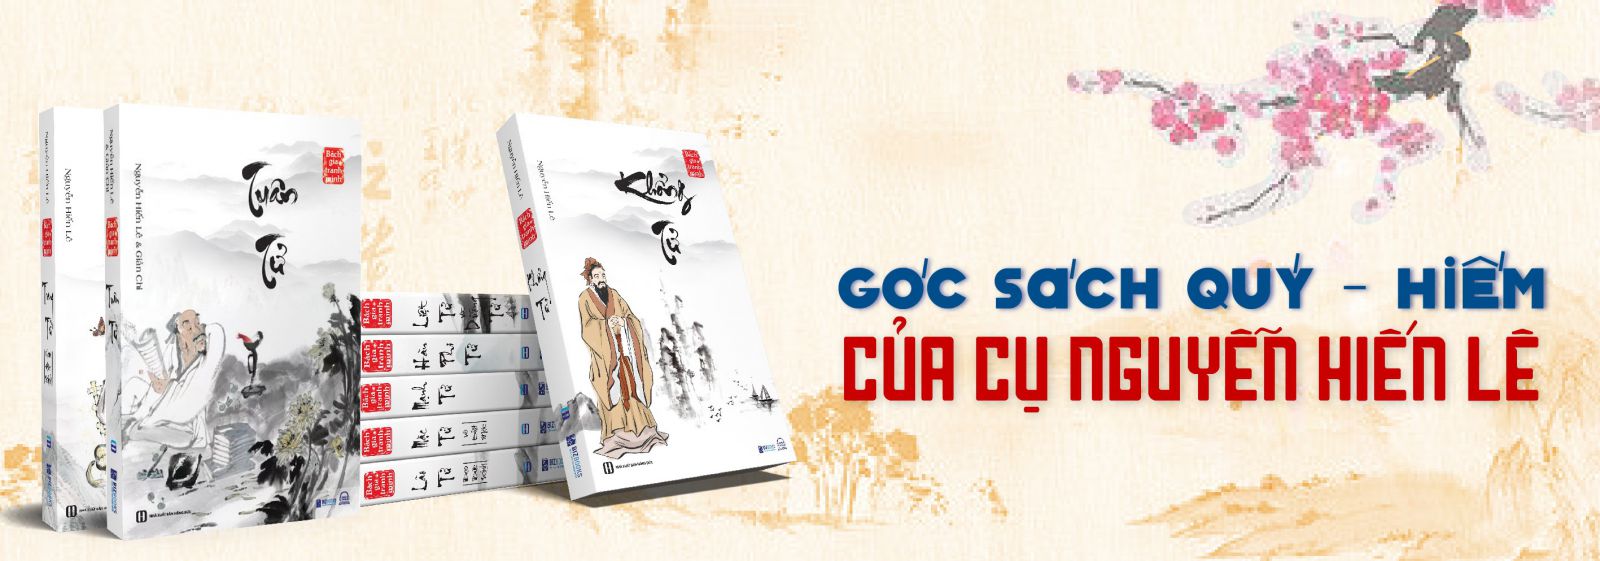 Tủ sách Nguyễn Hiến Lê